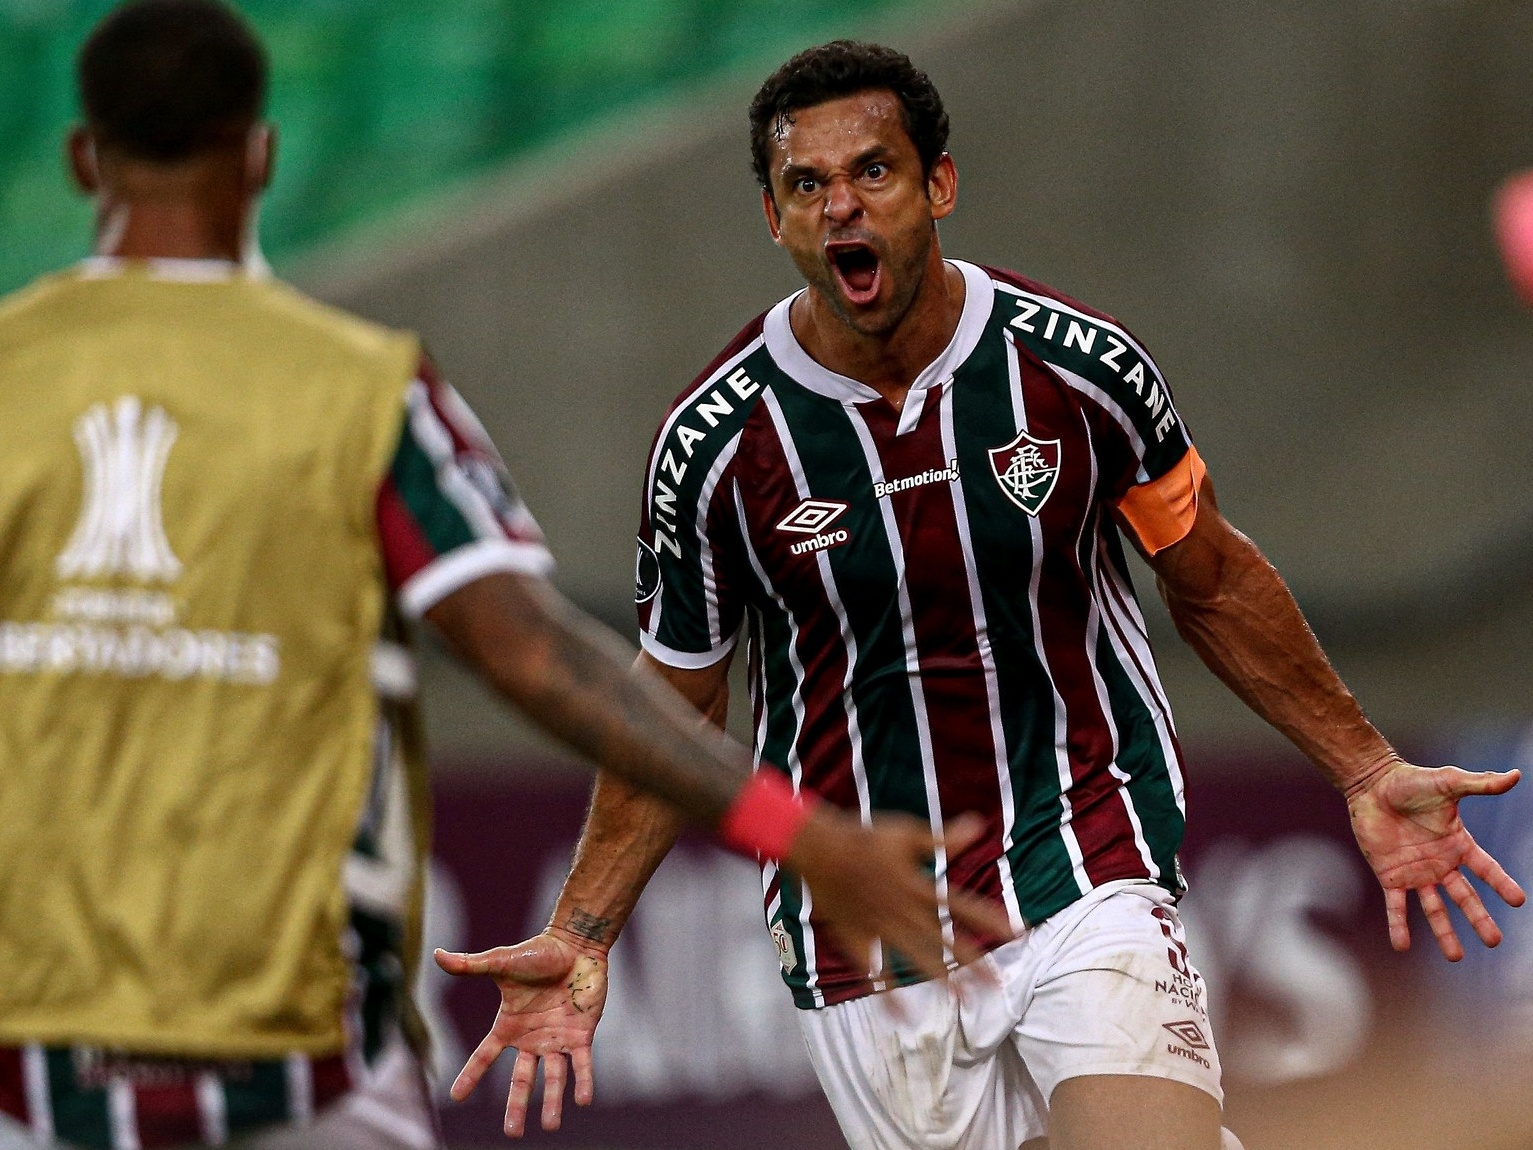 Assistir Fluminense x Santa Fe ao vivo online 12/05/2021 HD - FutebolPlayHD .com!